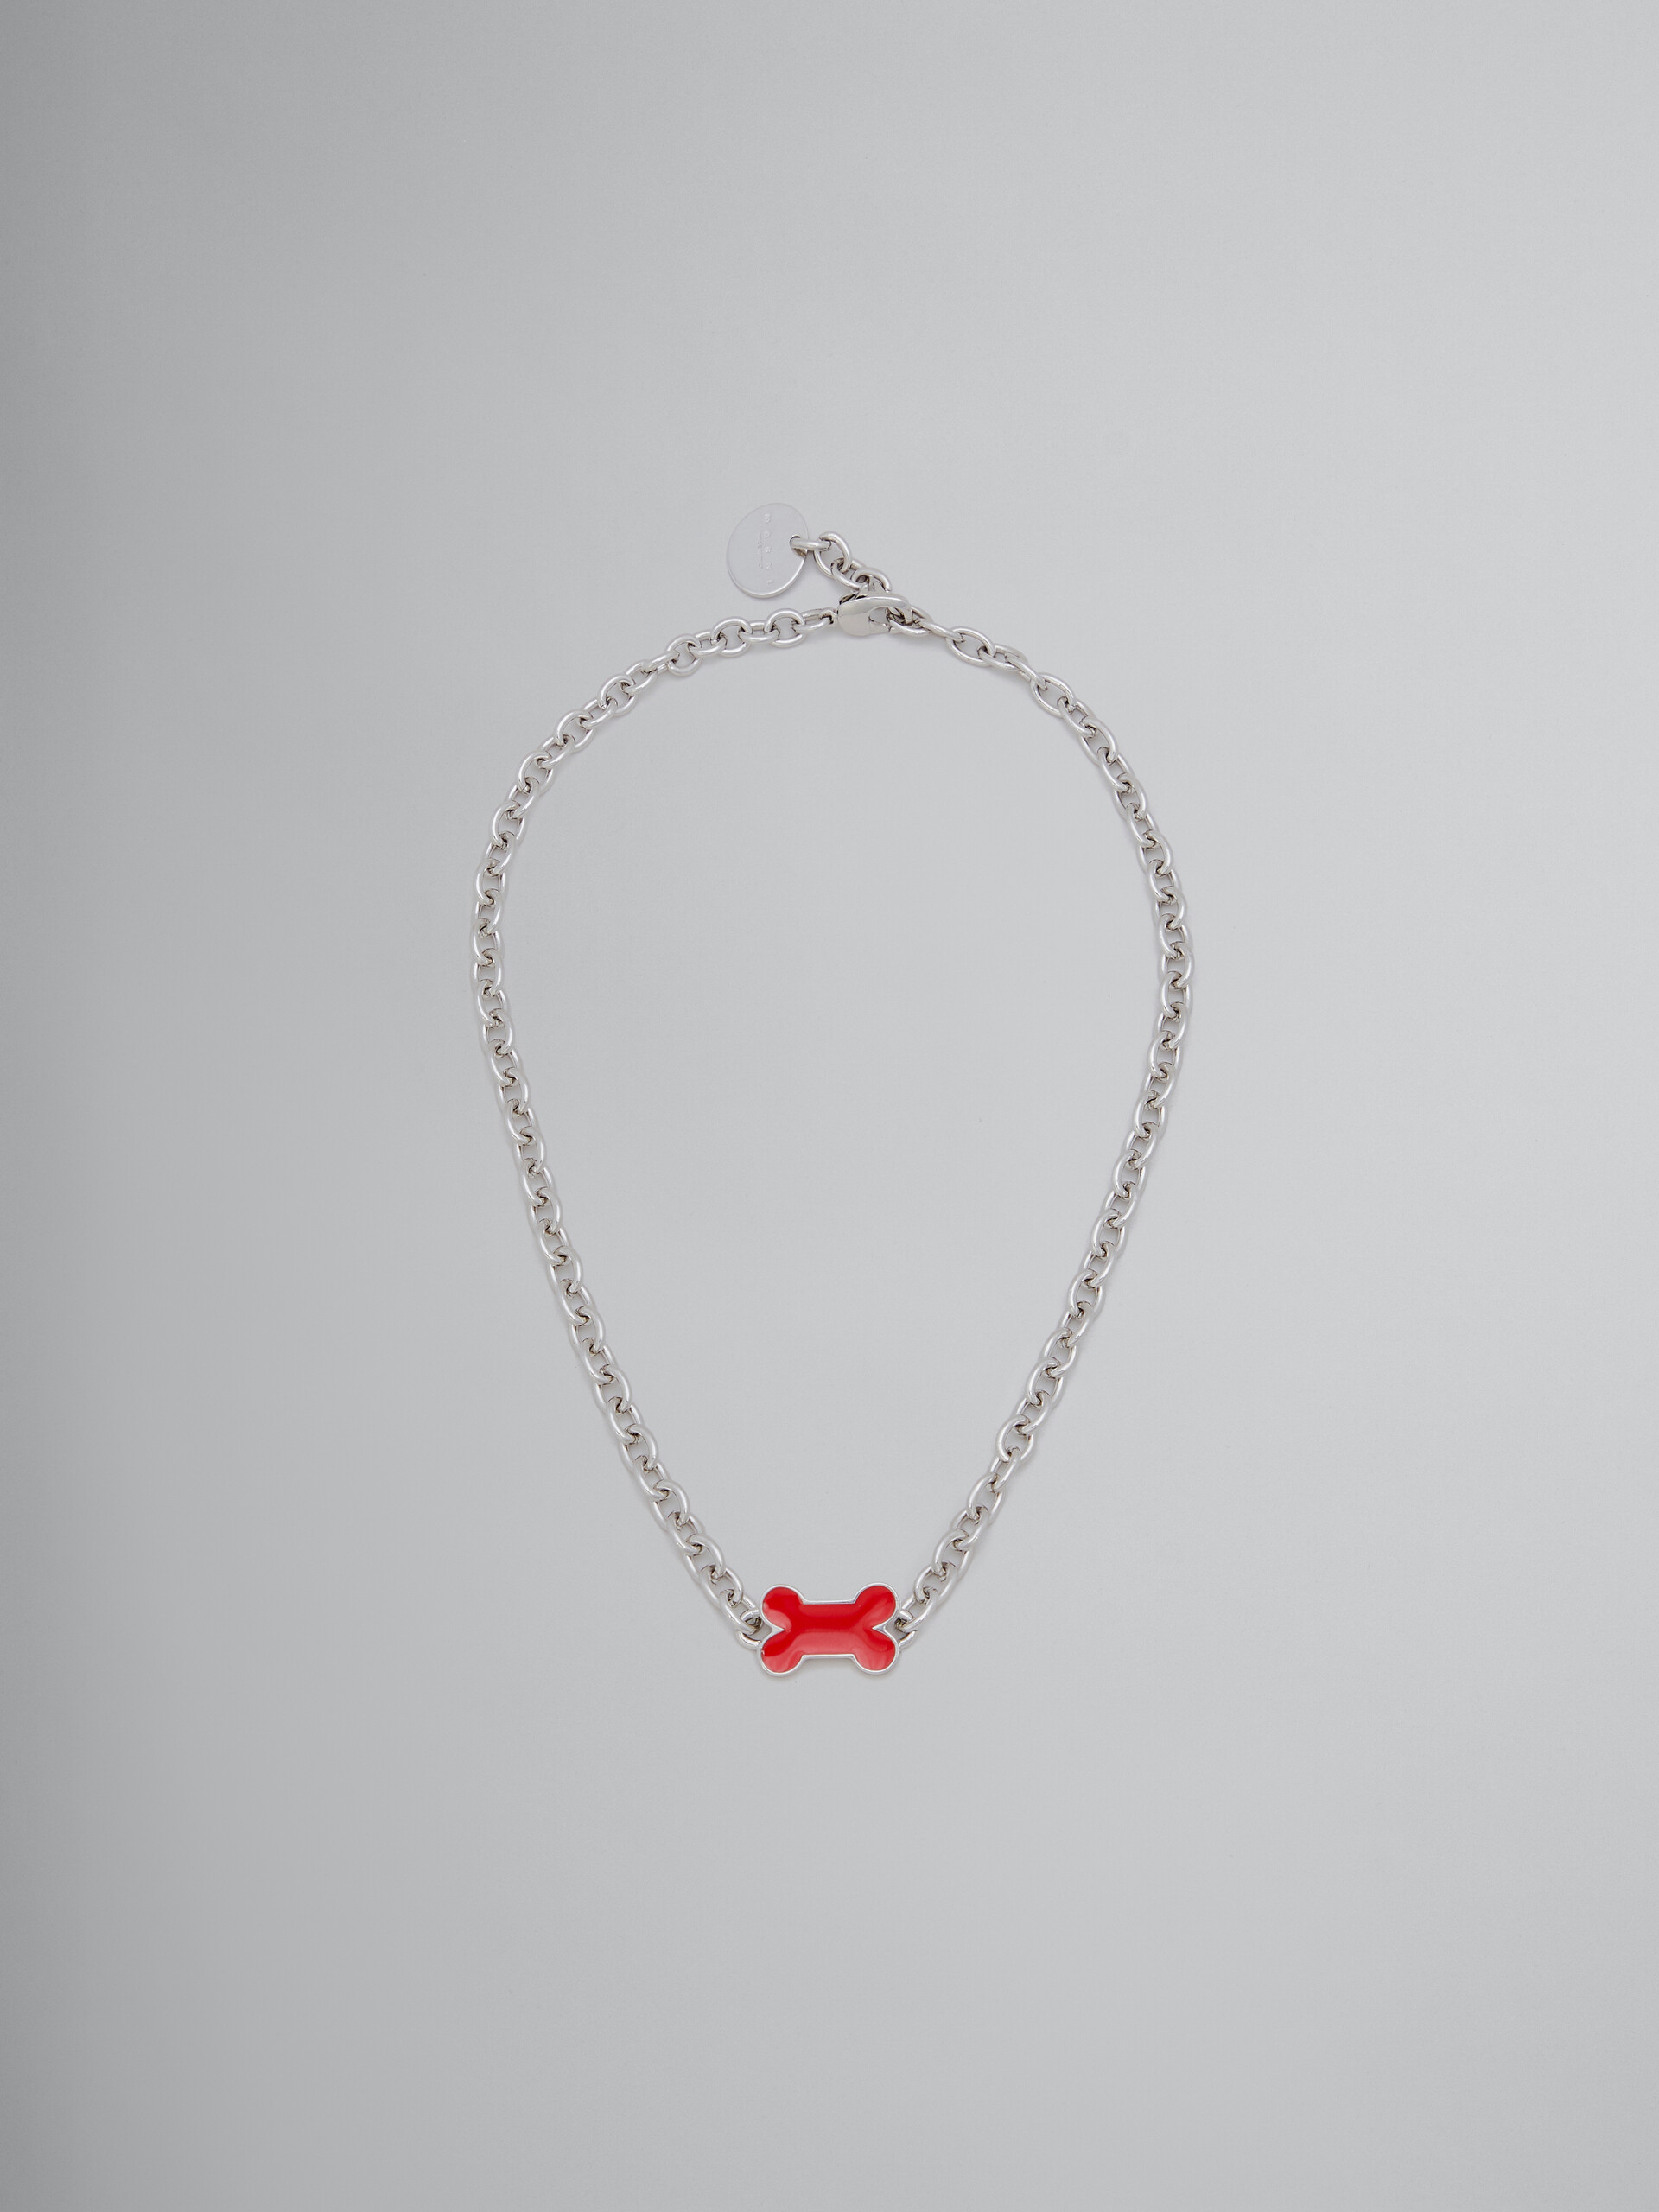 Halskette mit Kettengliedern und rot emailliertem Knochen - Halsketten - Image 1